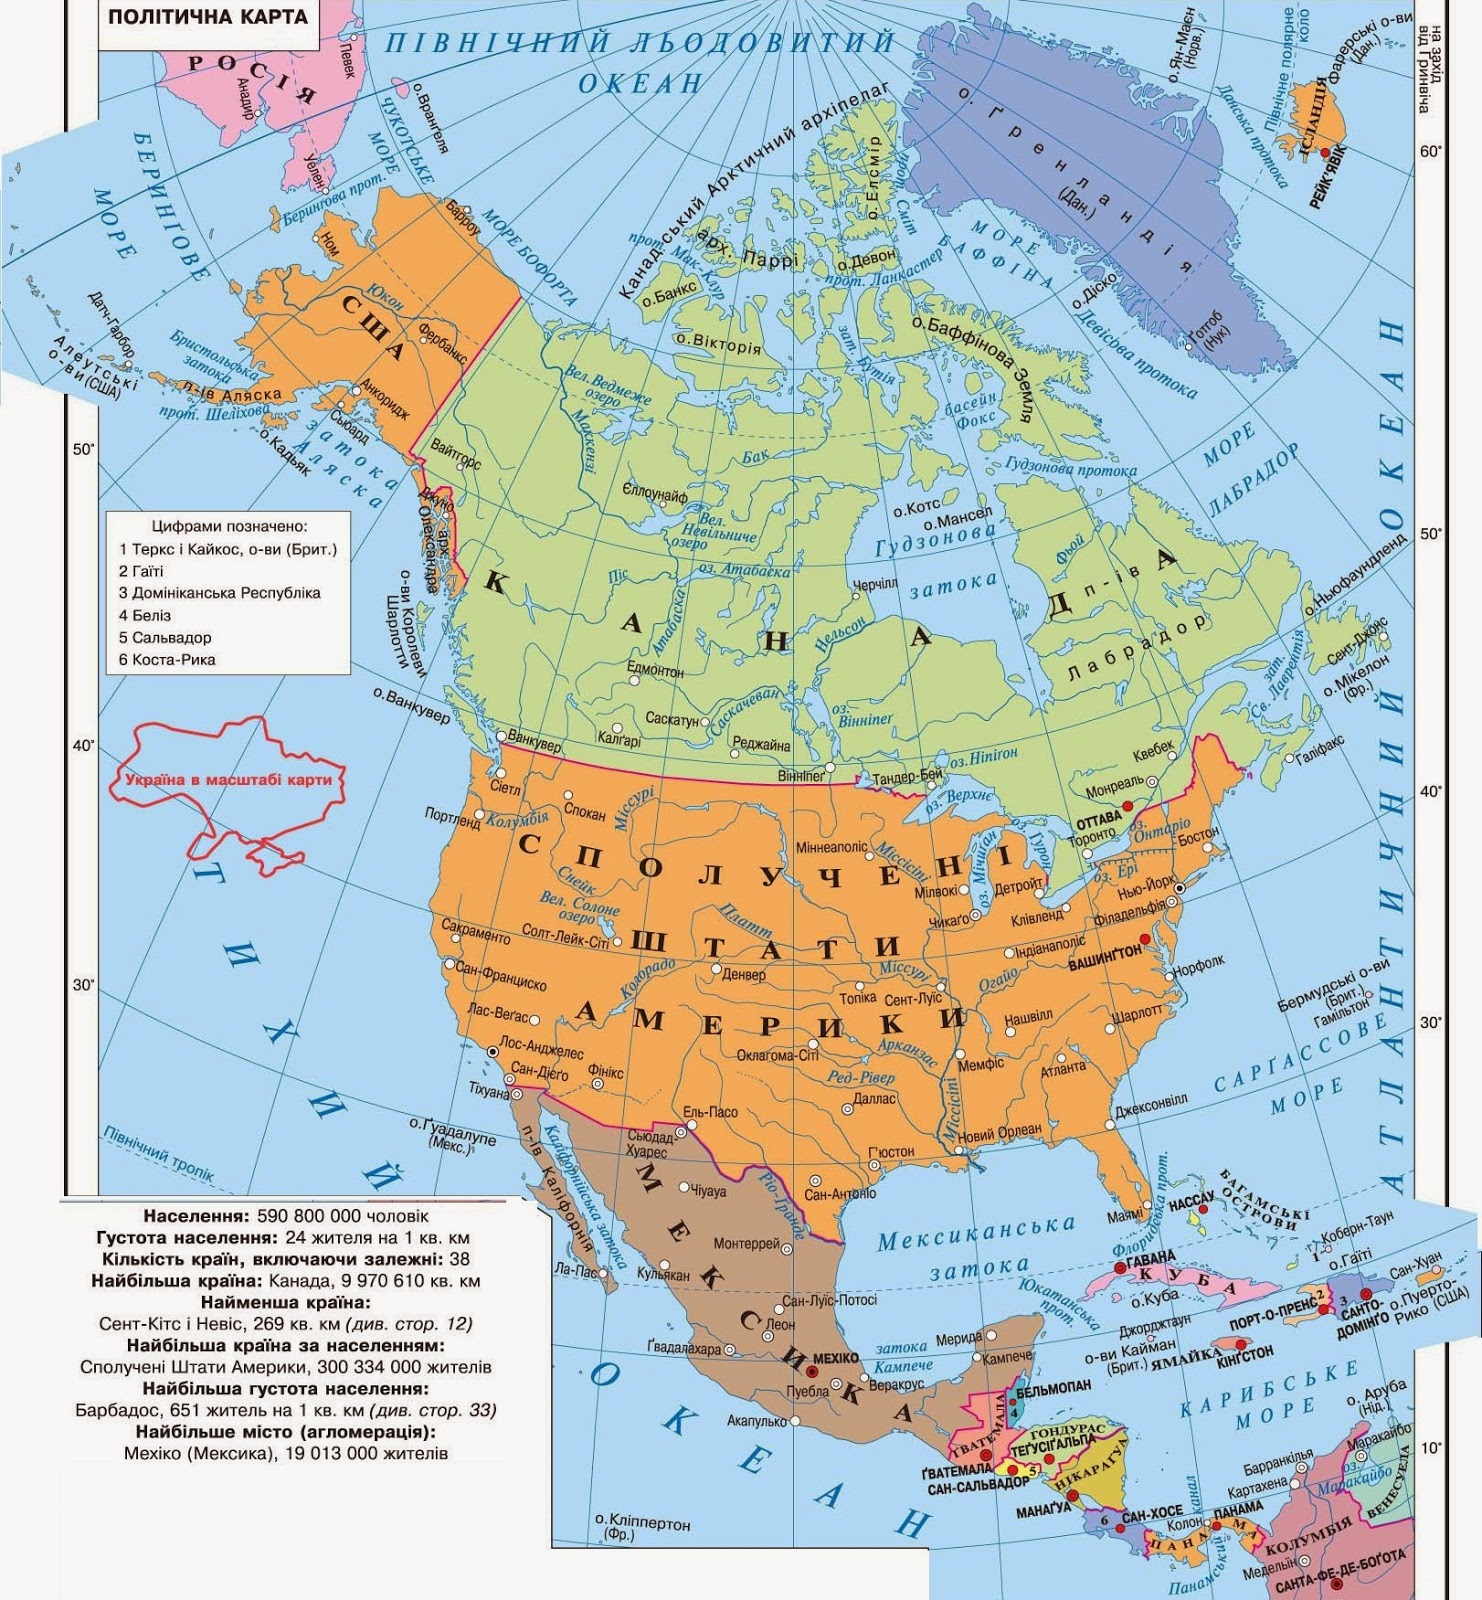 Характеристика карты северная америка. Подробная политическая карта Северной Америки. Физическая карта Северной Америки. Подробная карта Северной Америки. Политическая карта Сев Америки.